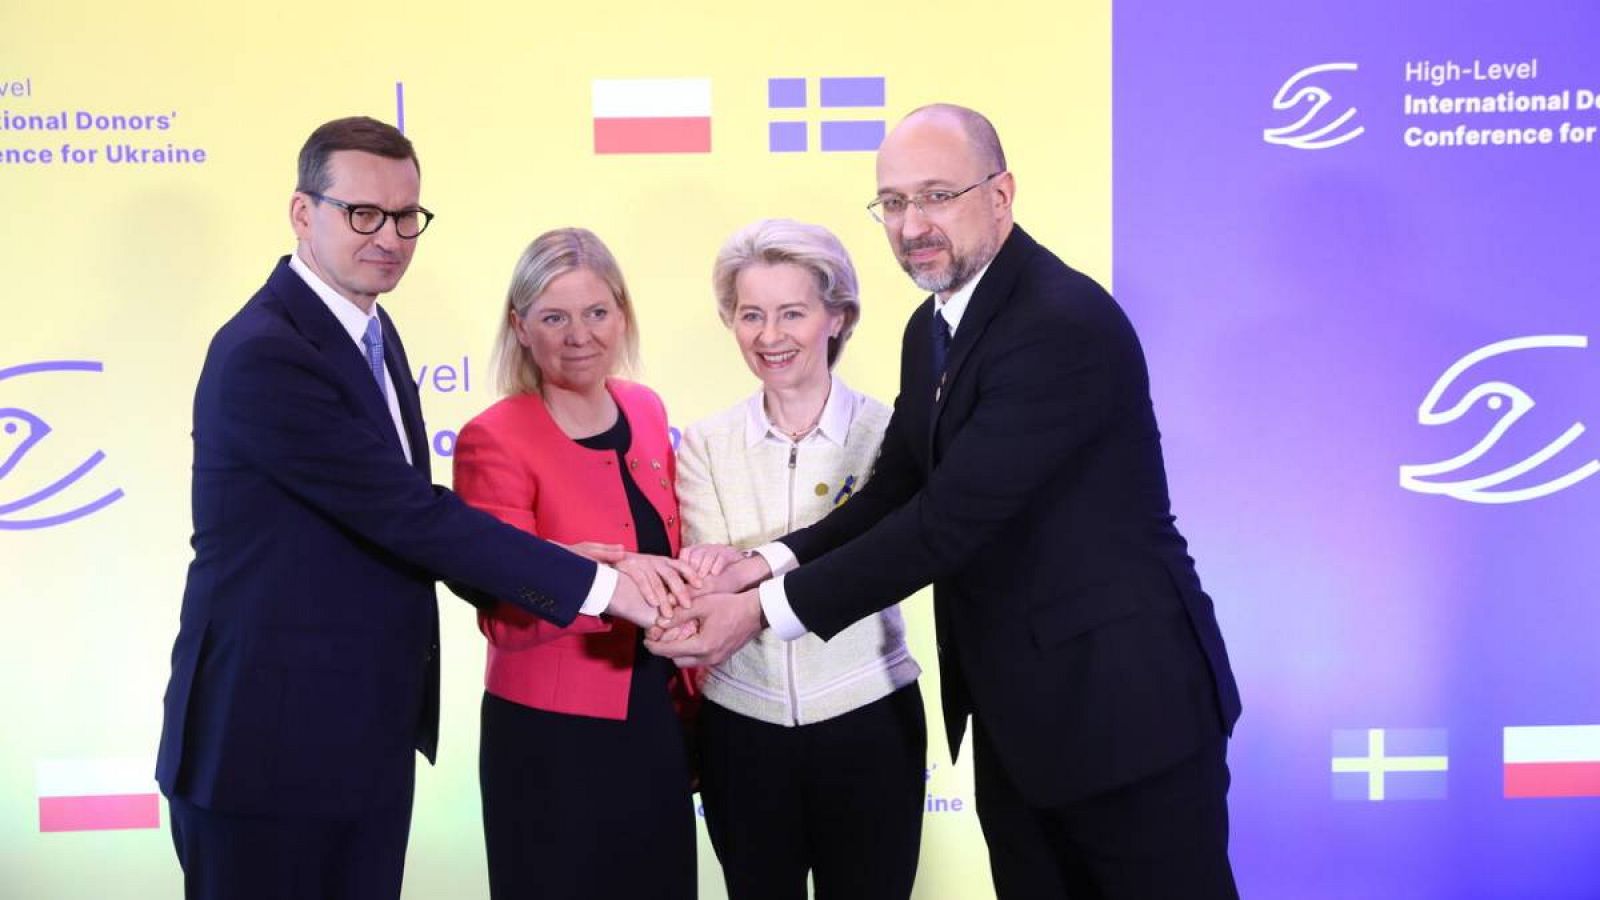 El Primer Ministro polaco Mateusz Morawiecki, la Primera Ministra sueca Magdalena Andersson, la Presidenta de la Comisión Europea Ursula von der Leyen y el Primer Ministro de Ucrania Denys Shmyhal en la conferencia de donantes. 